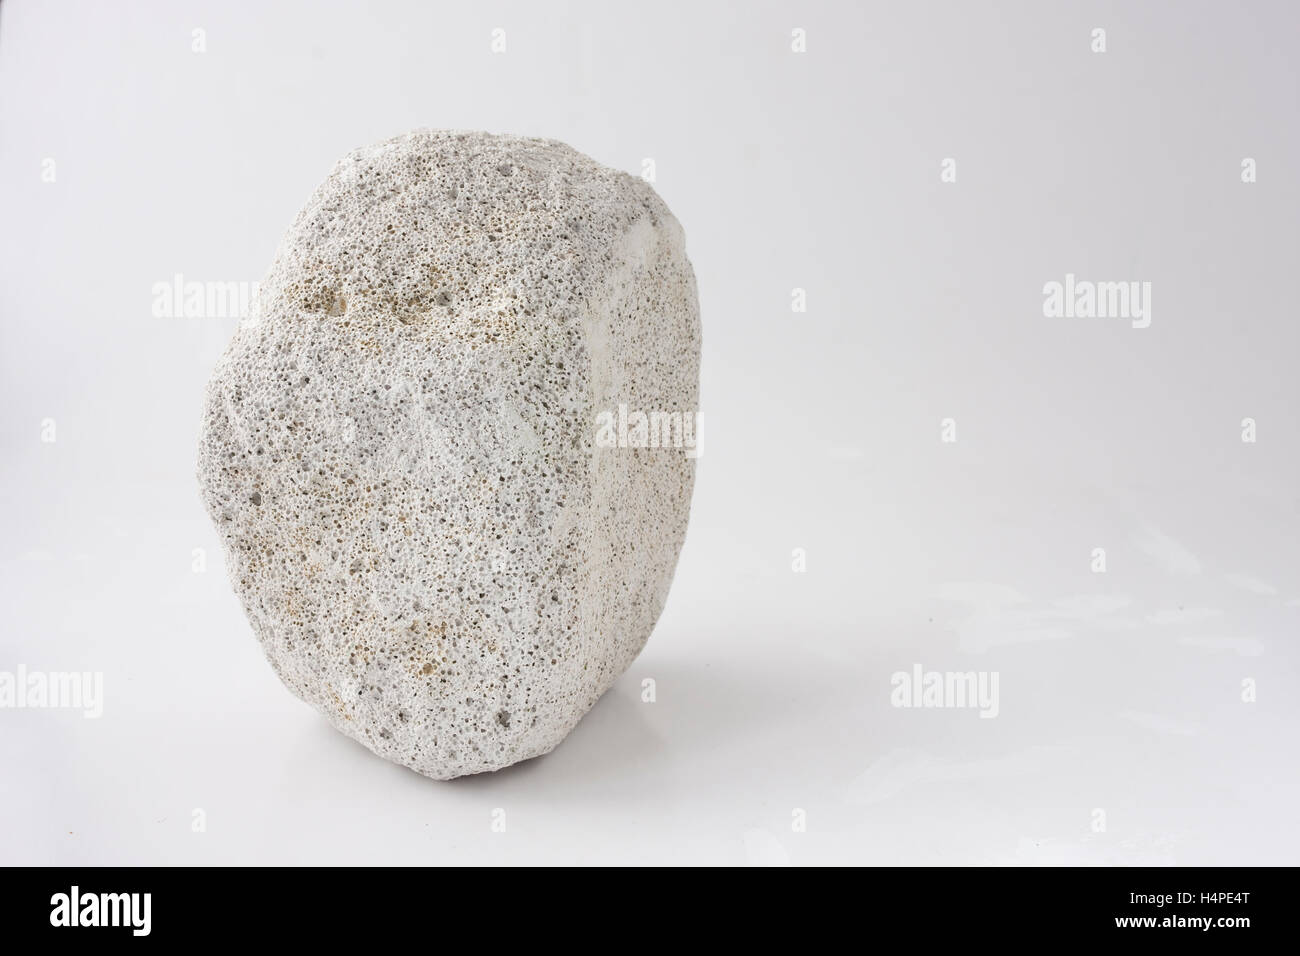 pumice stone isolated on white background Stock Photo